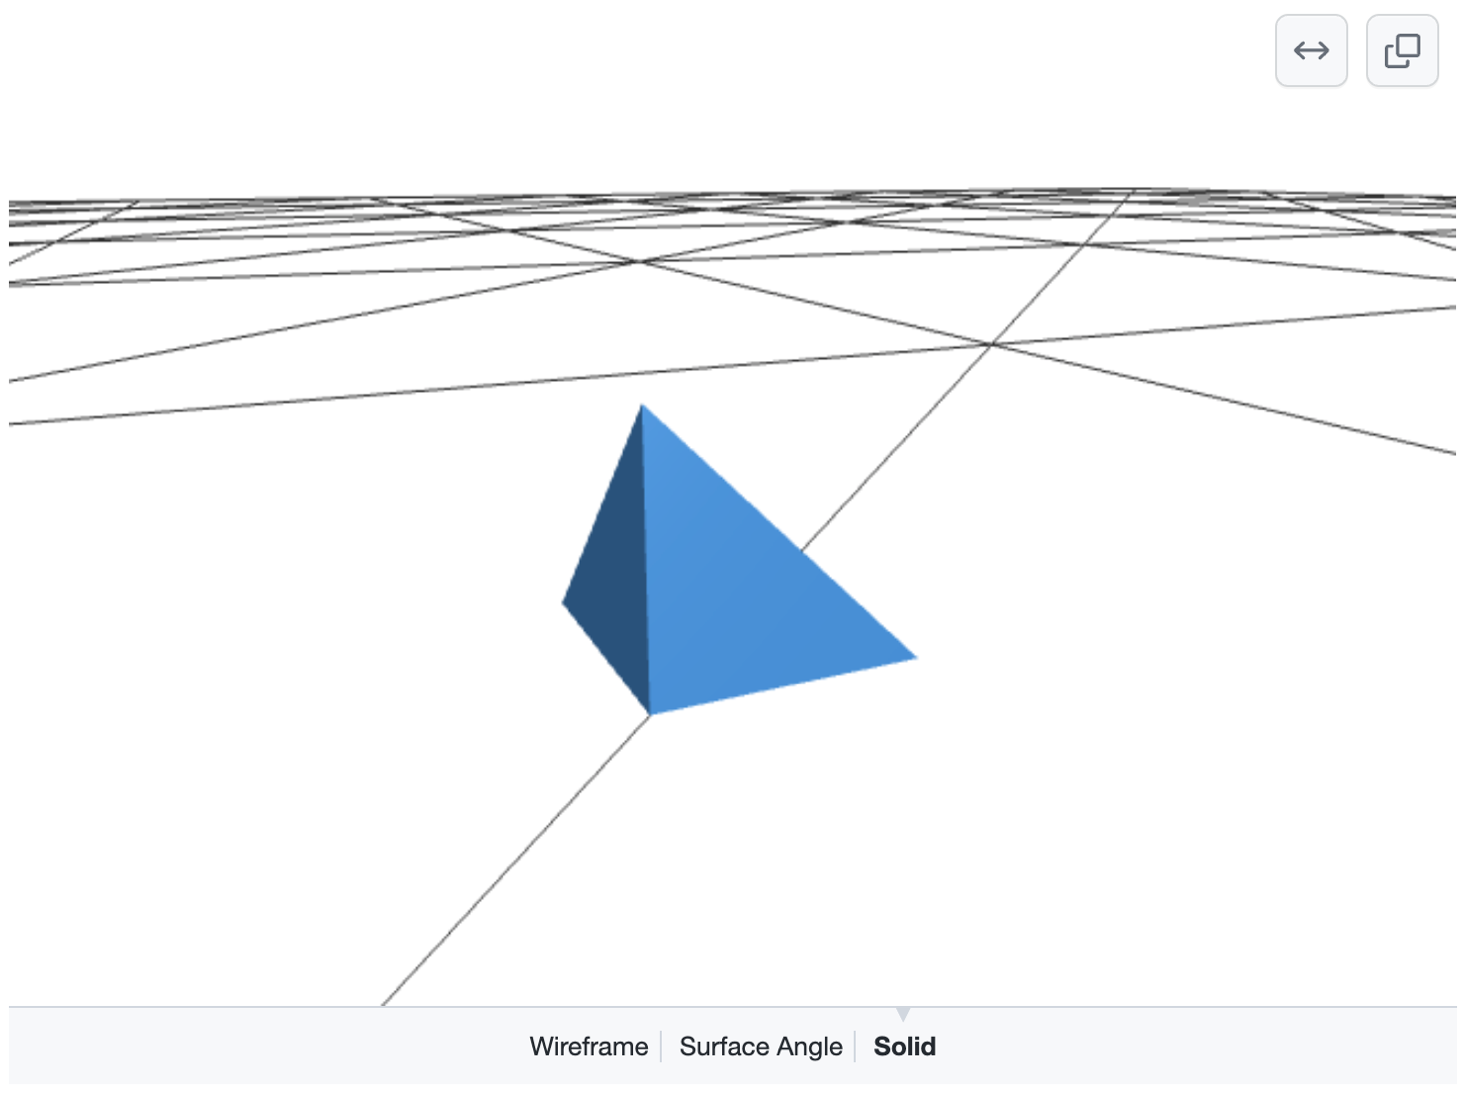 Captura de pantalla de un modelo 3D representado y manipulable que muestra una pirámide azul sobre una cuadrícula de líneas negras en un suelo blanco. Las opciones para seleccionar "Wireframe", "Surface Angle" (Ángulo de superficie) o "Solid" aparecen en la parte inferior.